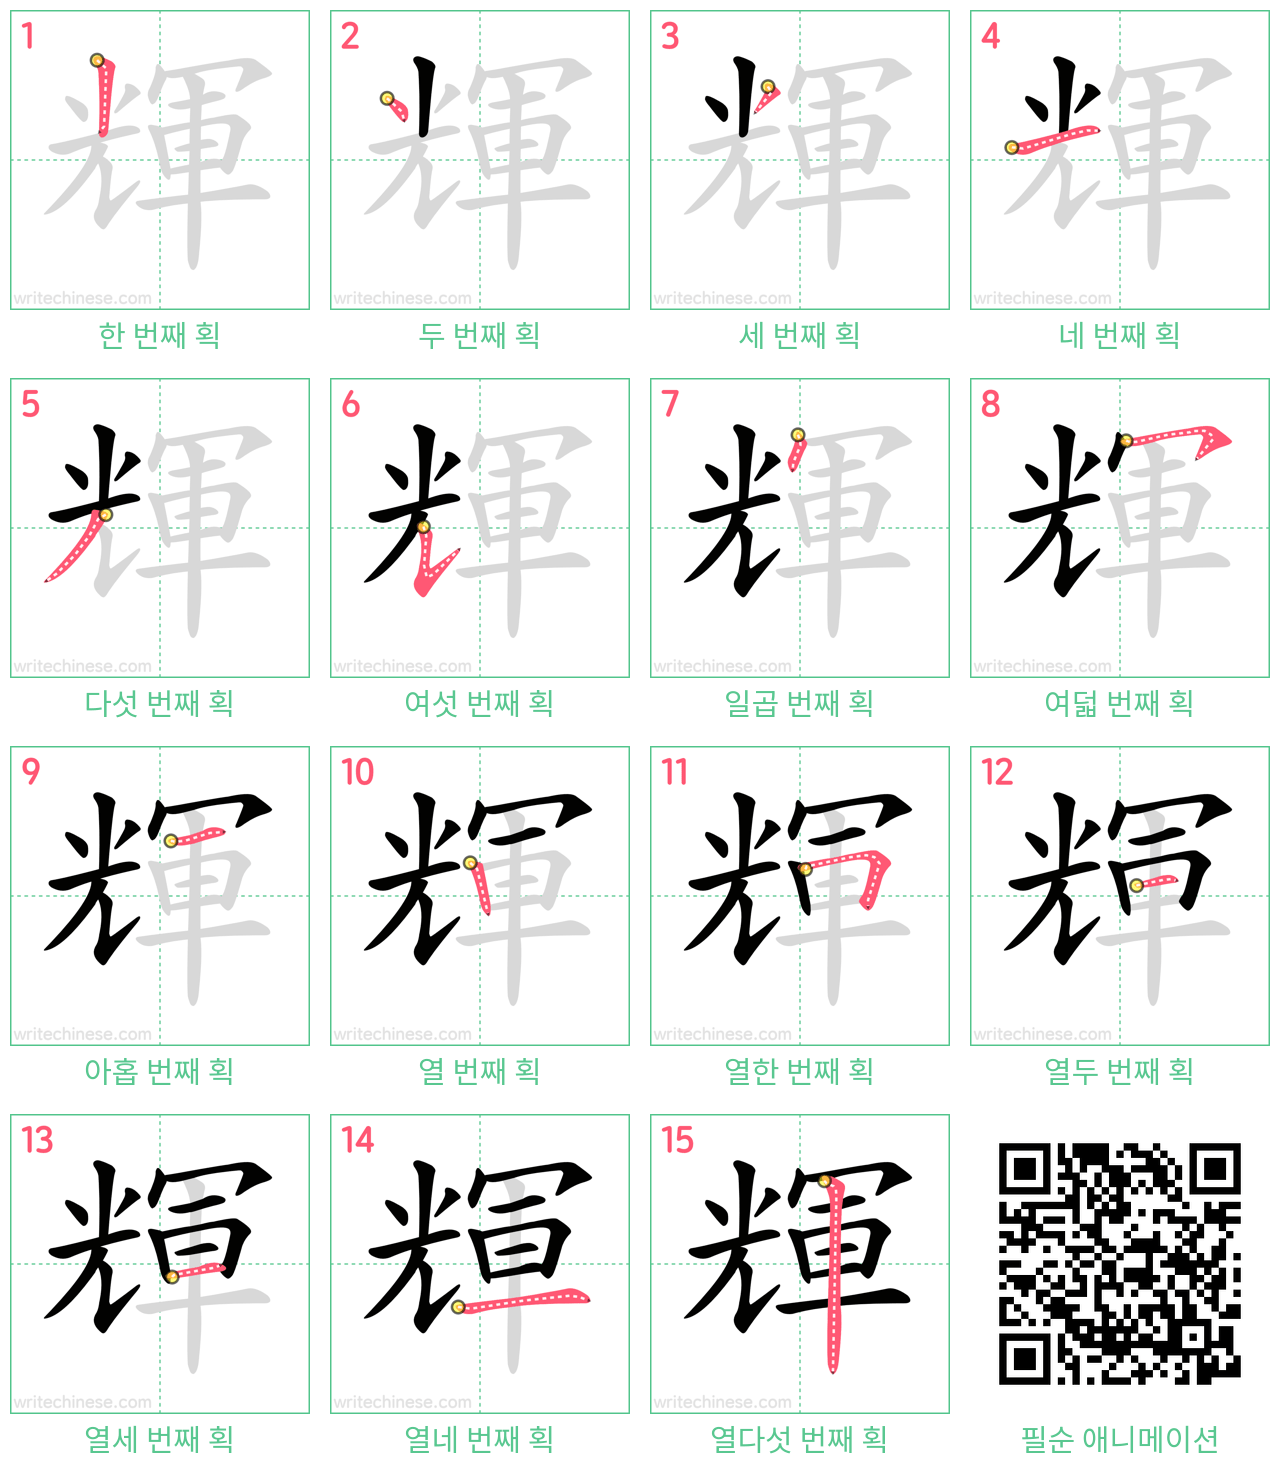 輝 step-by-step stroke order diagrams